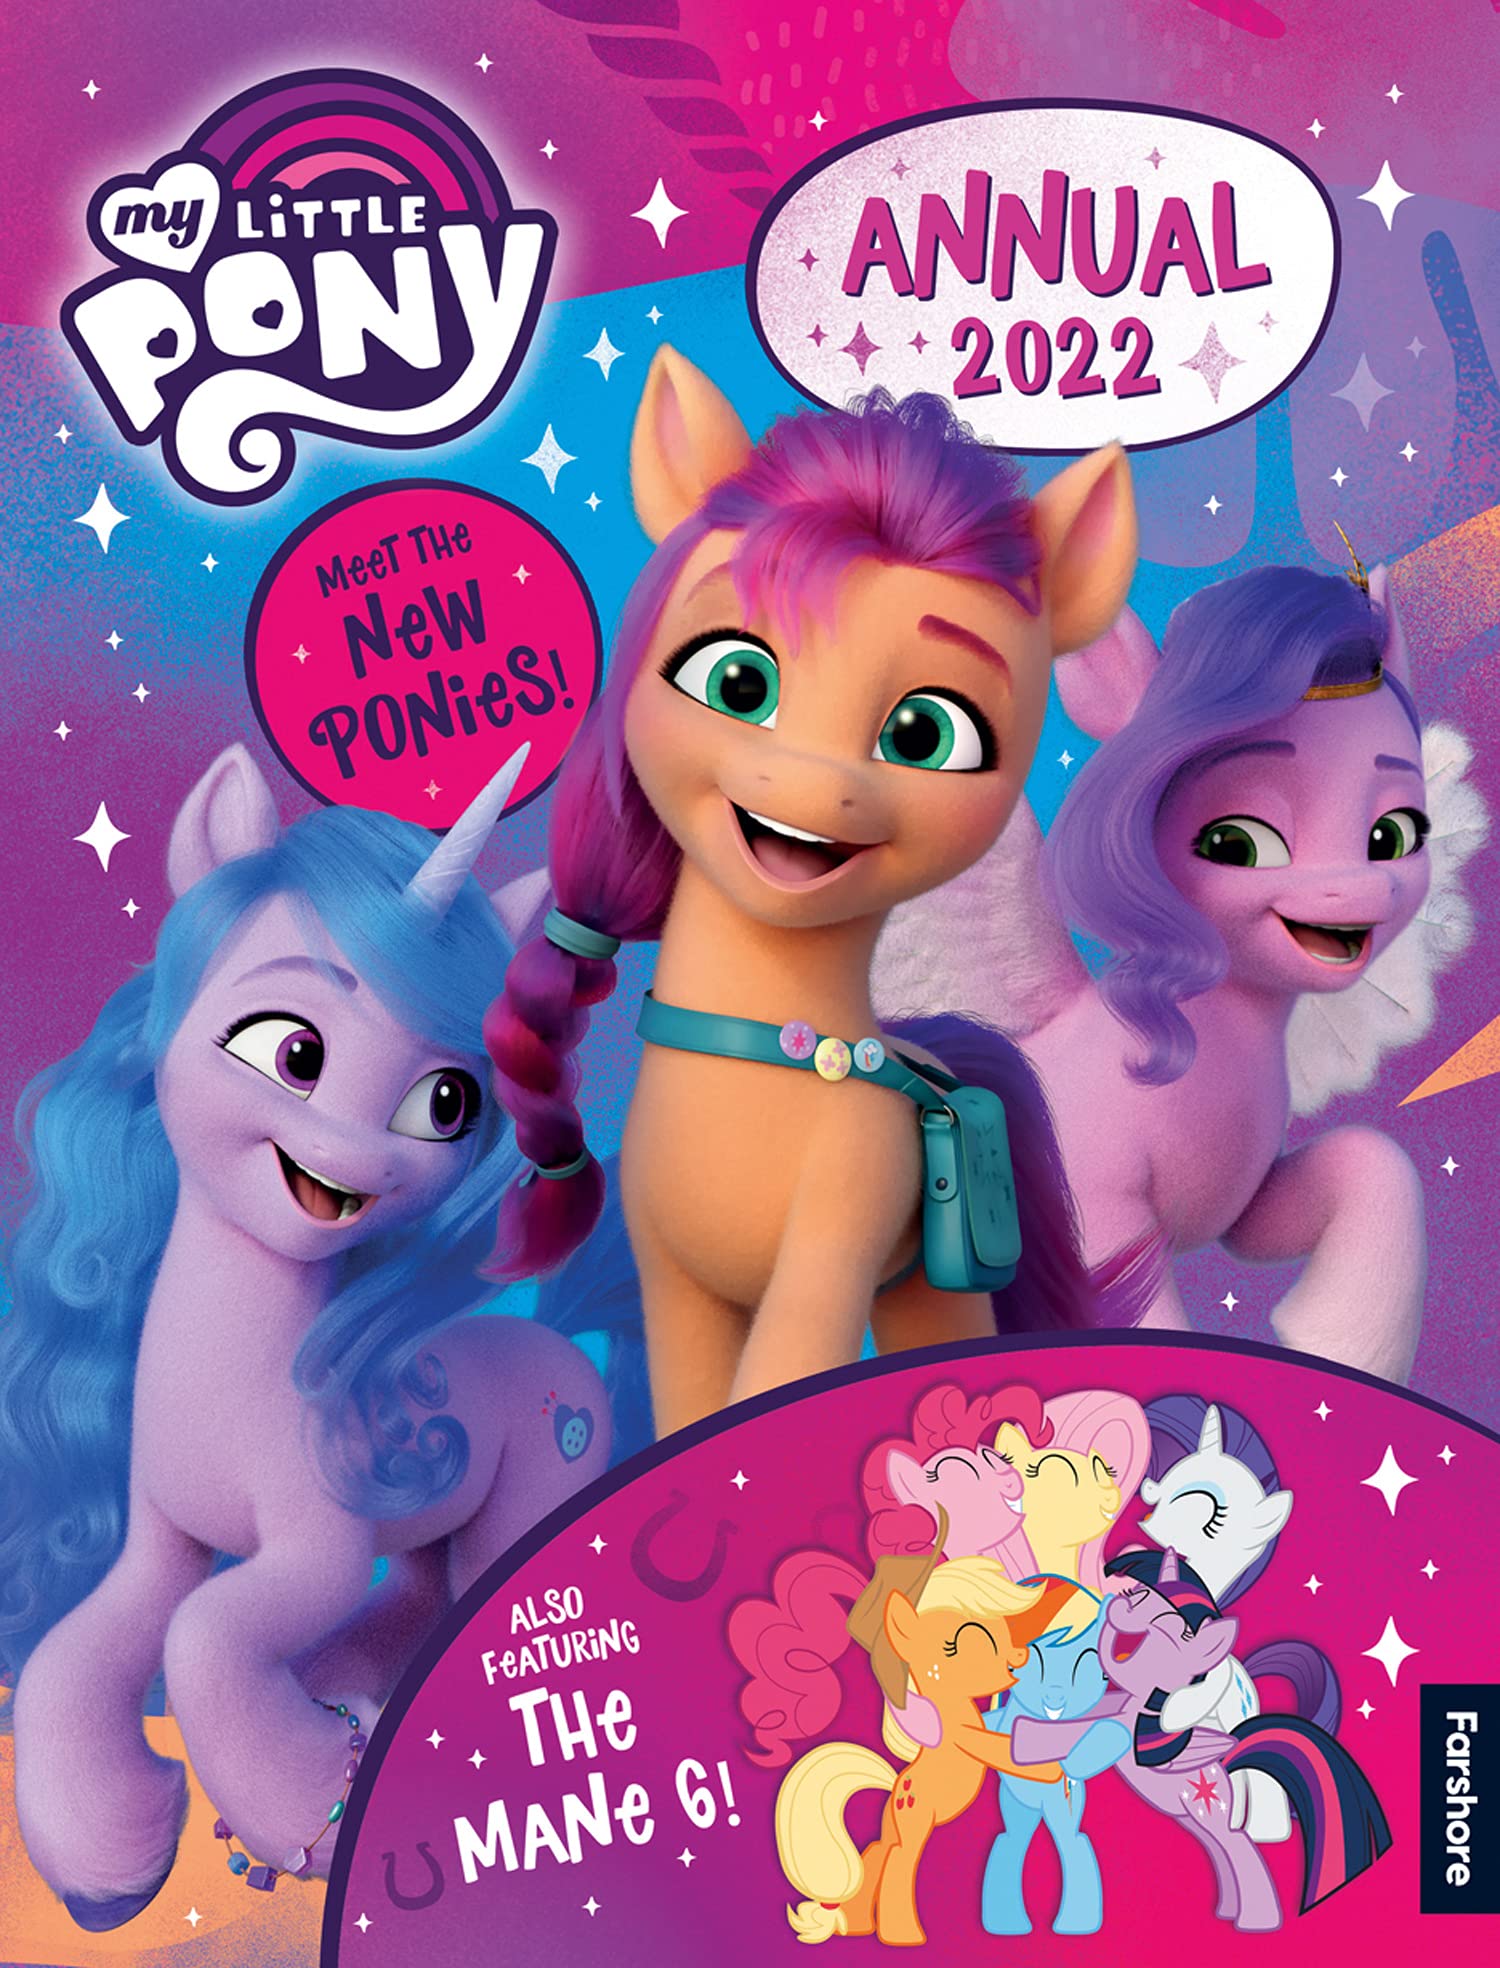 Colorir MLP My Little Pony Jogos de Pintar Desenhos animados Video infantil  Brinquedos para crianças 